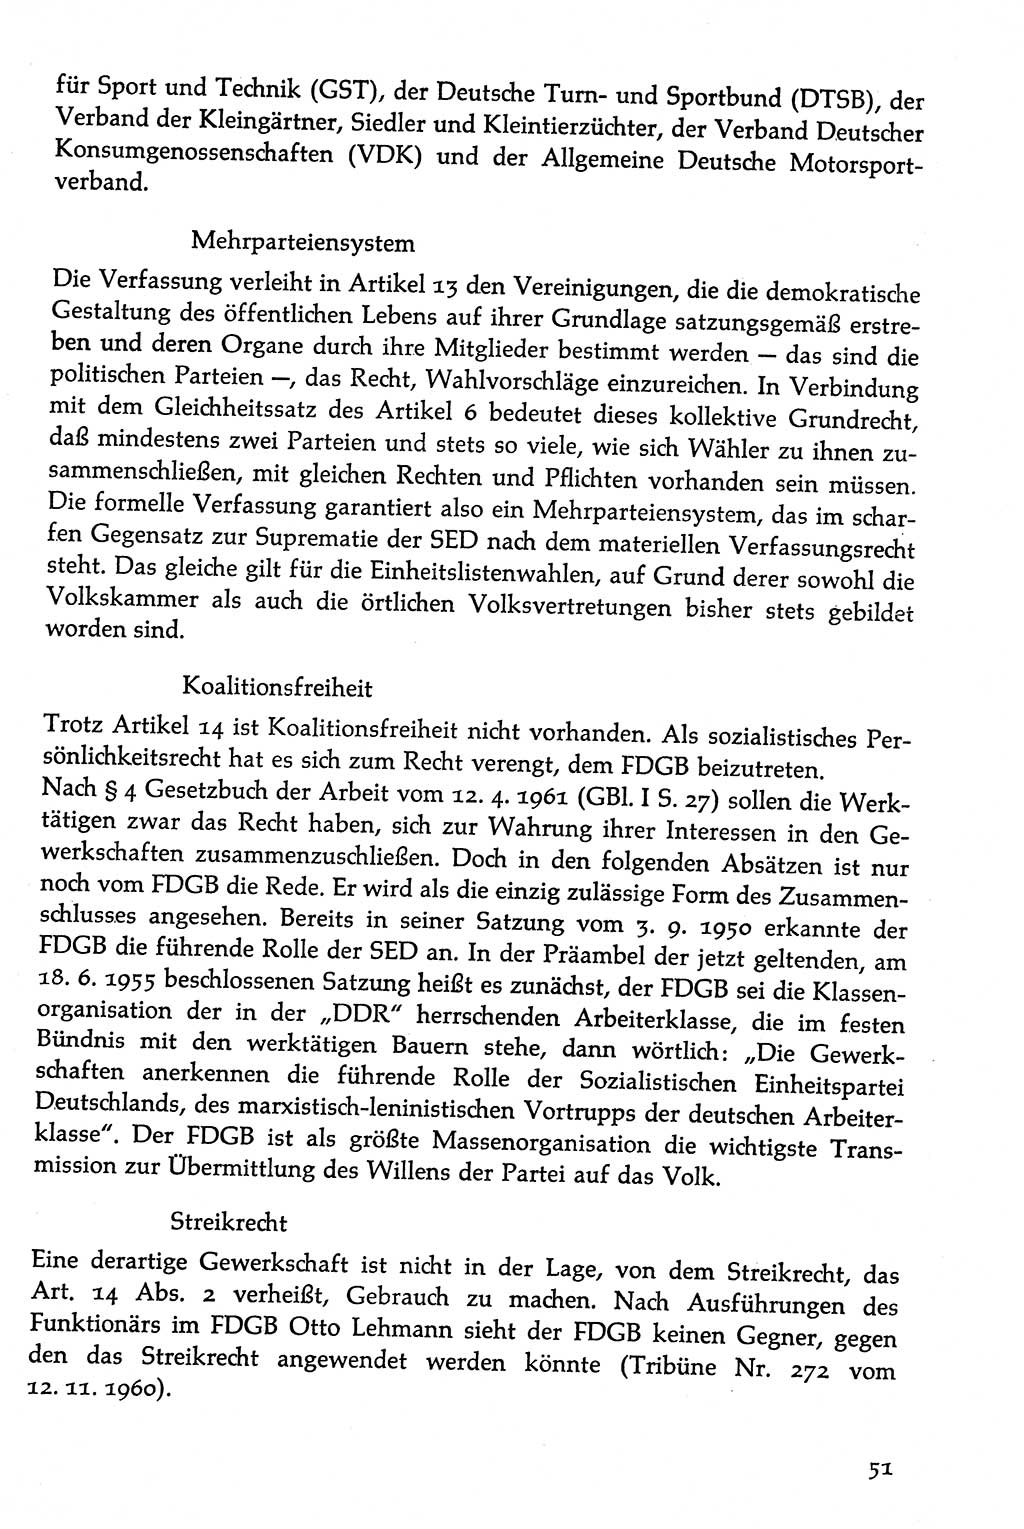 Volksdemokratische Ordnung in Mitteldeutschland [Deutsche Demokratische Republik (DDR)], Texte zur verfassungsrechtlichen Situation 1963, Seite 51 (Volksdem. Ordn. Md. DDR 1963, S. 51)